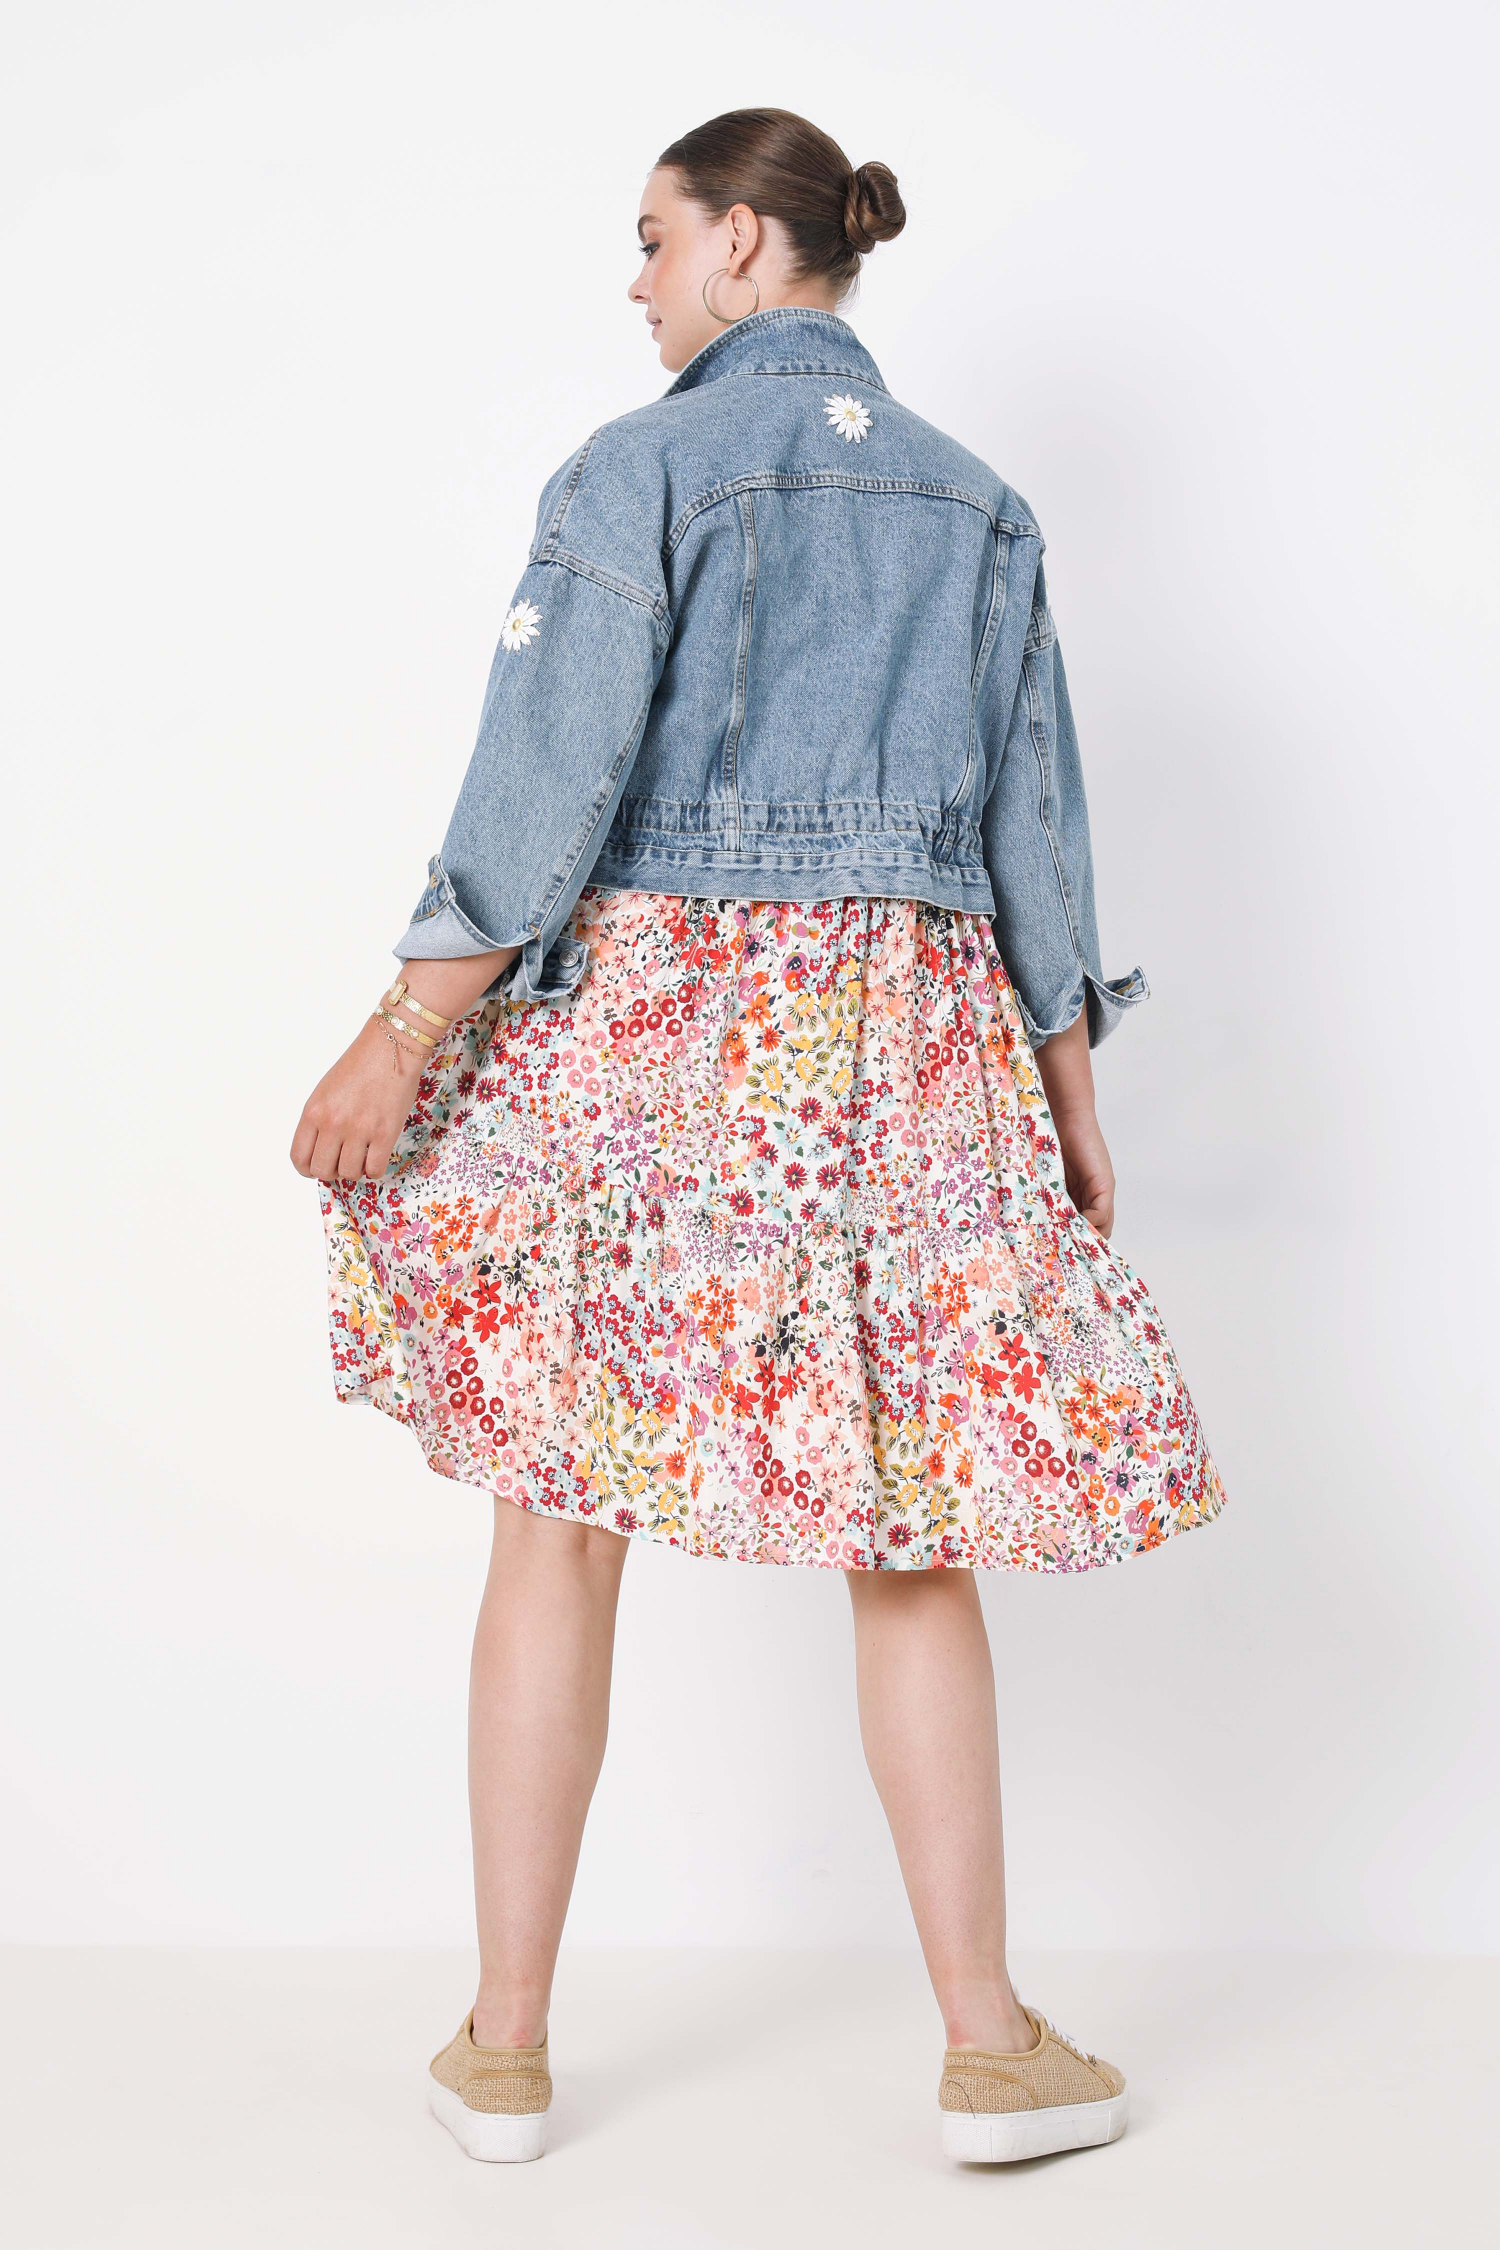 Short denim jacket with daisy